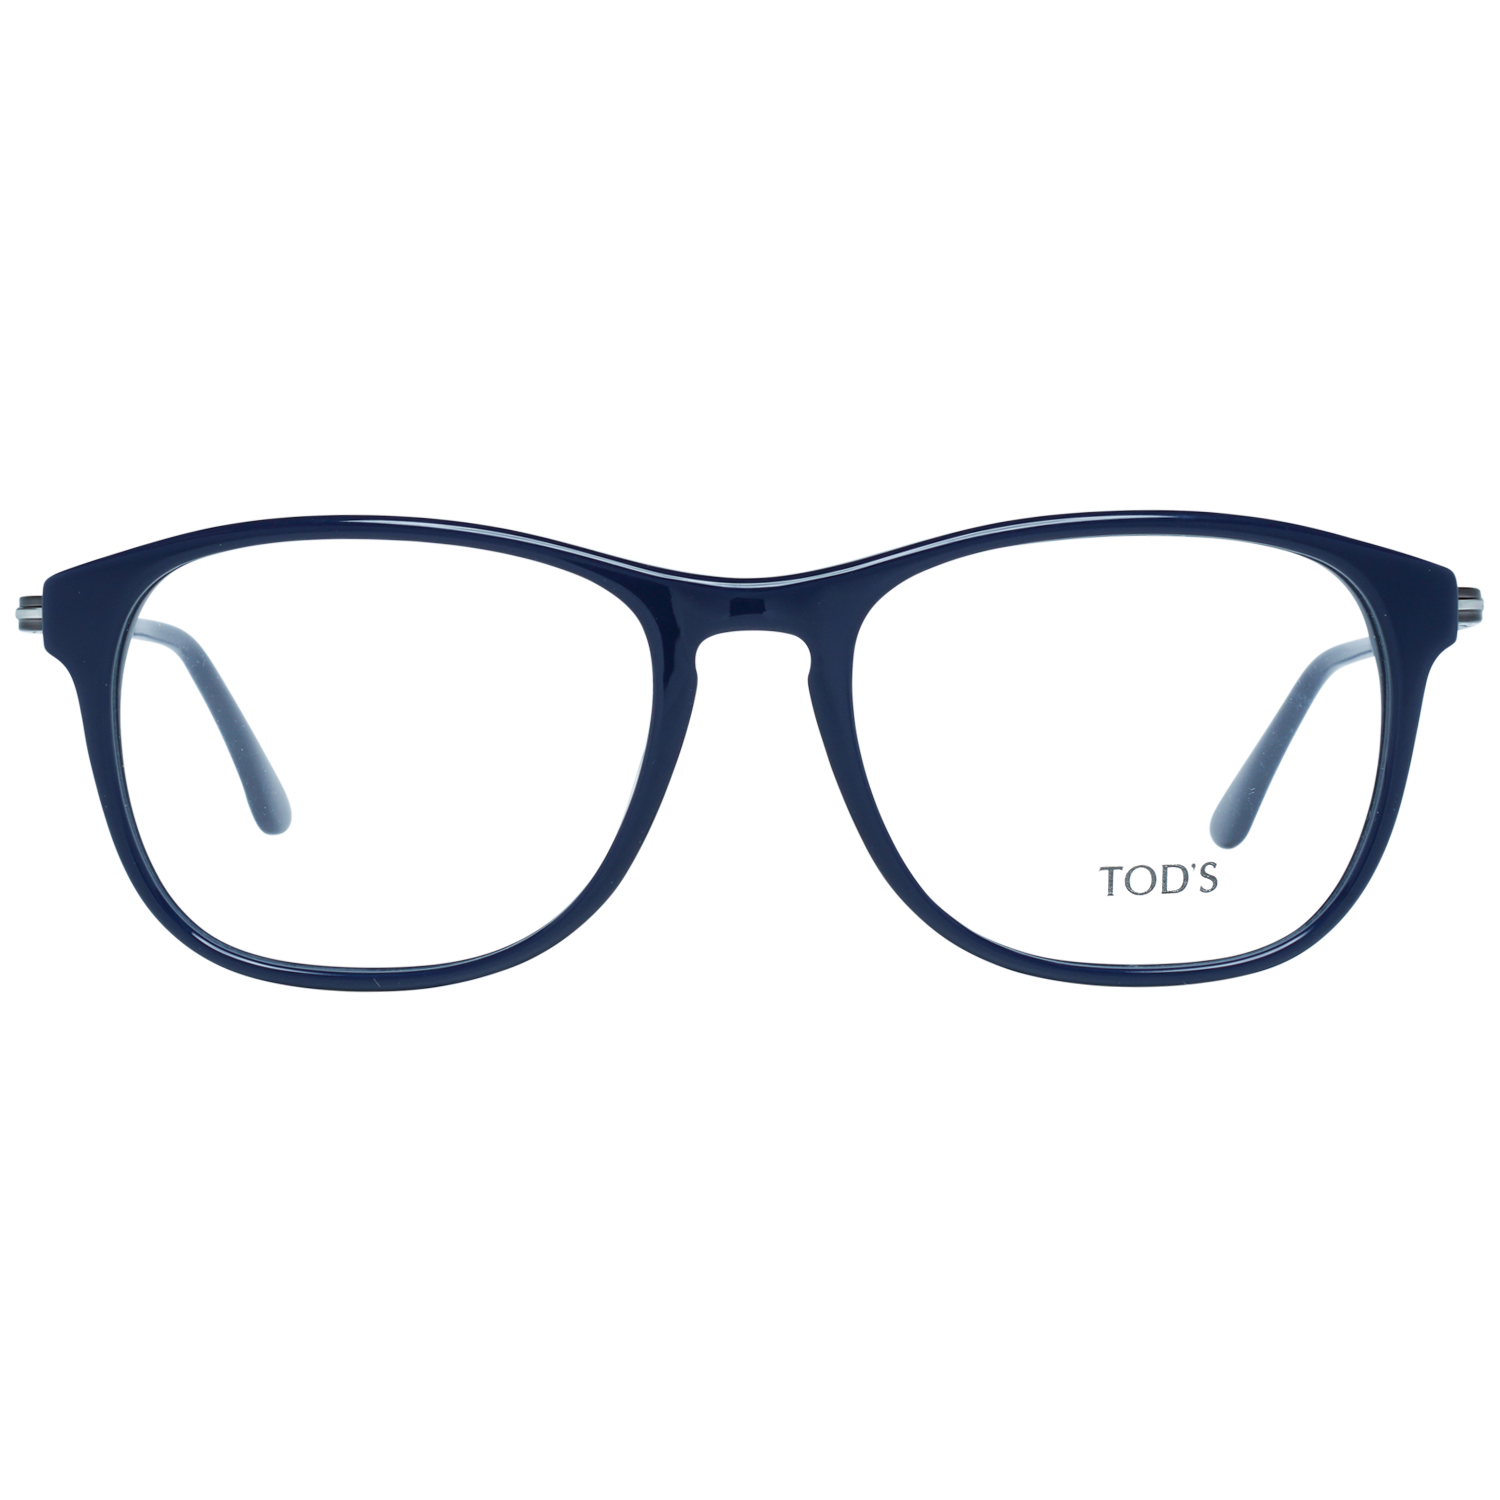 Tods Frames Tods Glasses Frames TO5140 089 53 Eyeglasses Eyewear UK USA Australia 